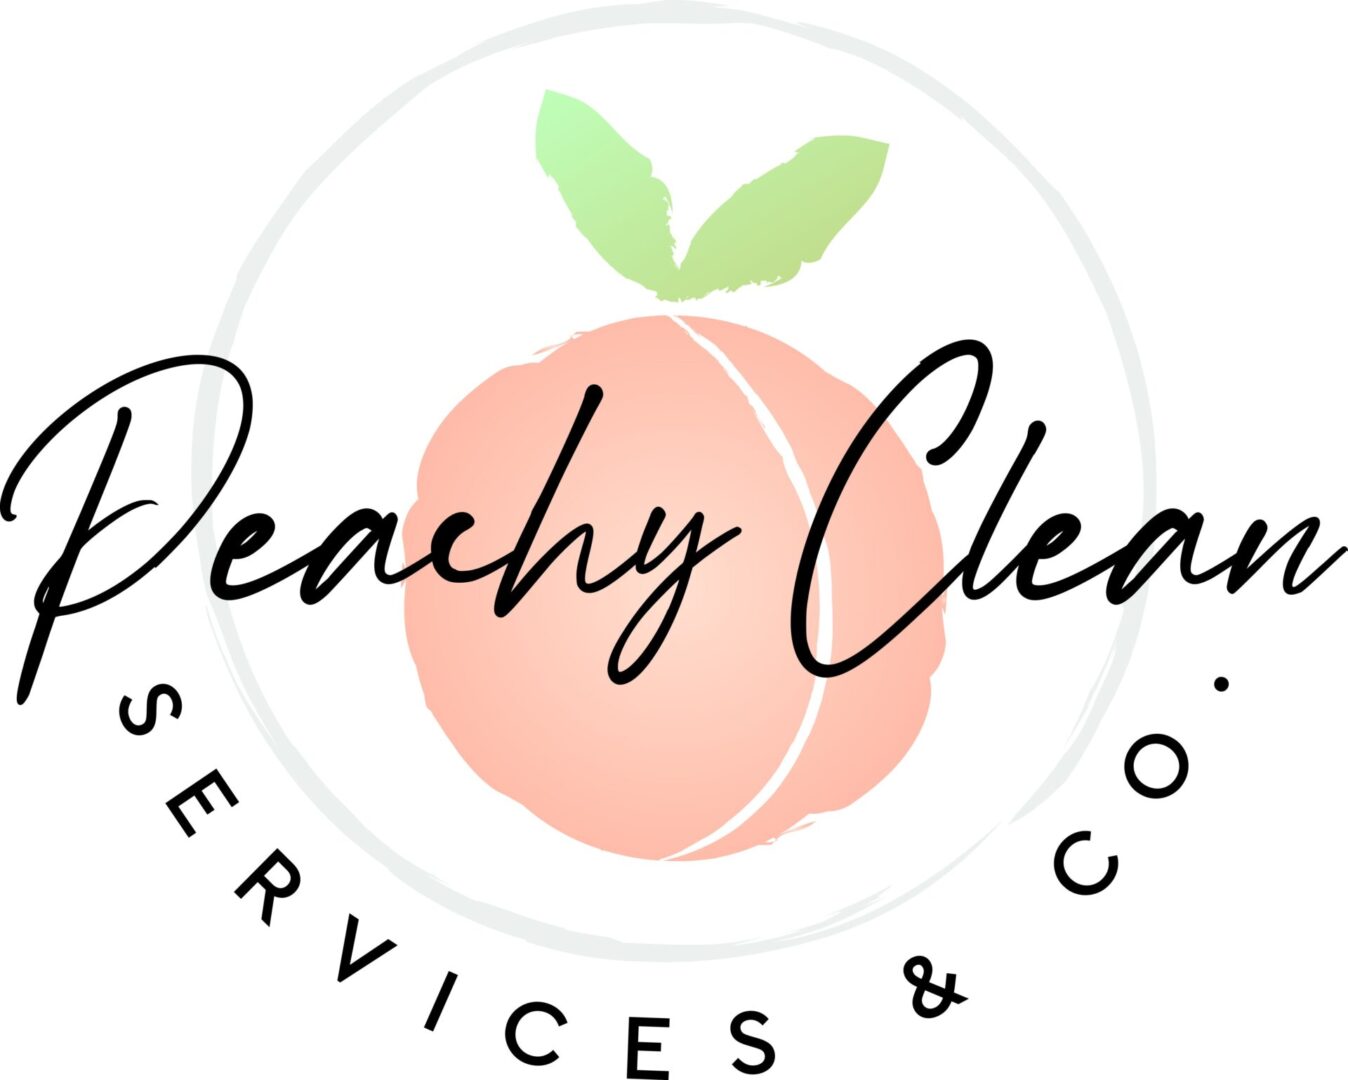 CX-84418_Peachy Clean Services & Co_FINAL.jpg_1681432877